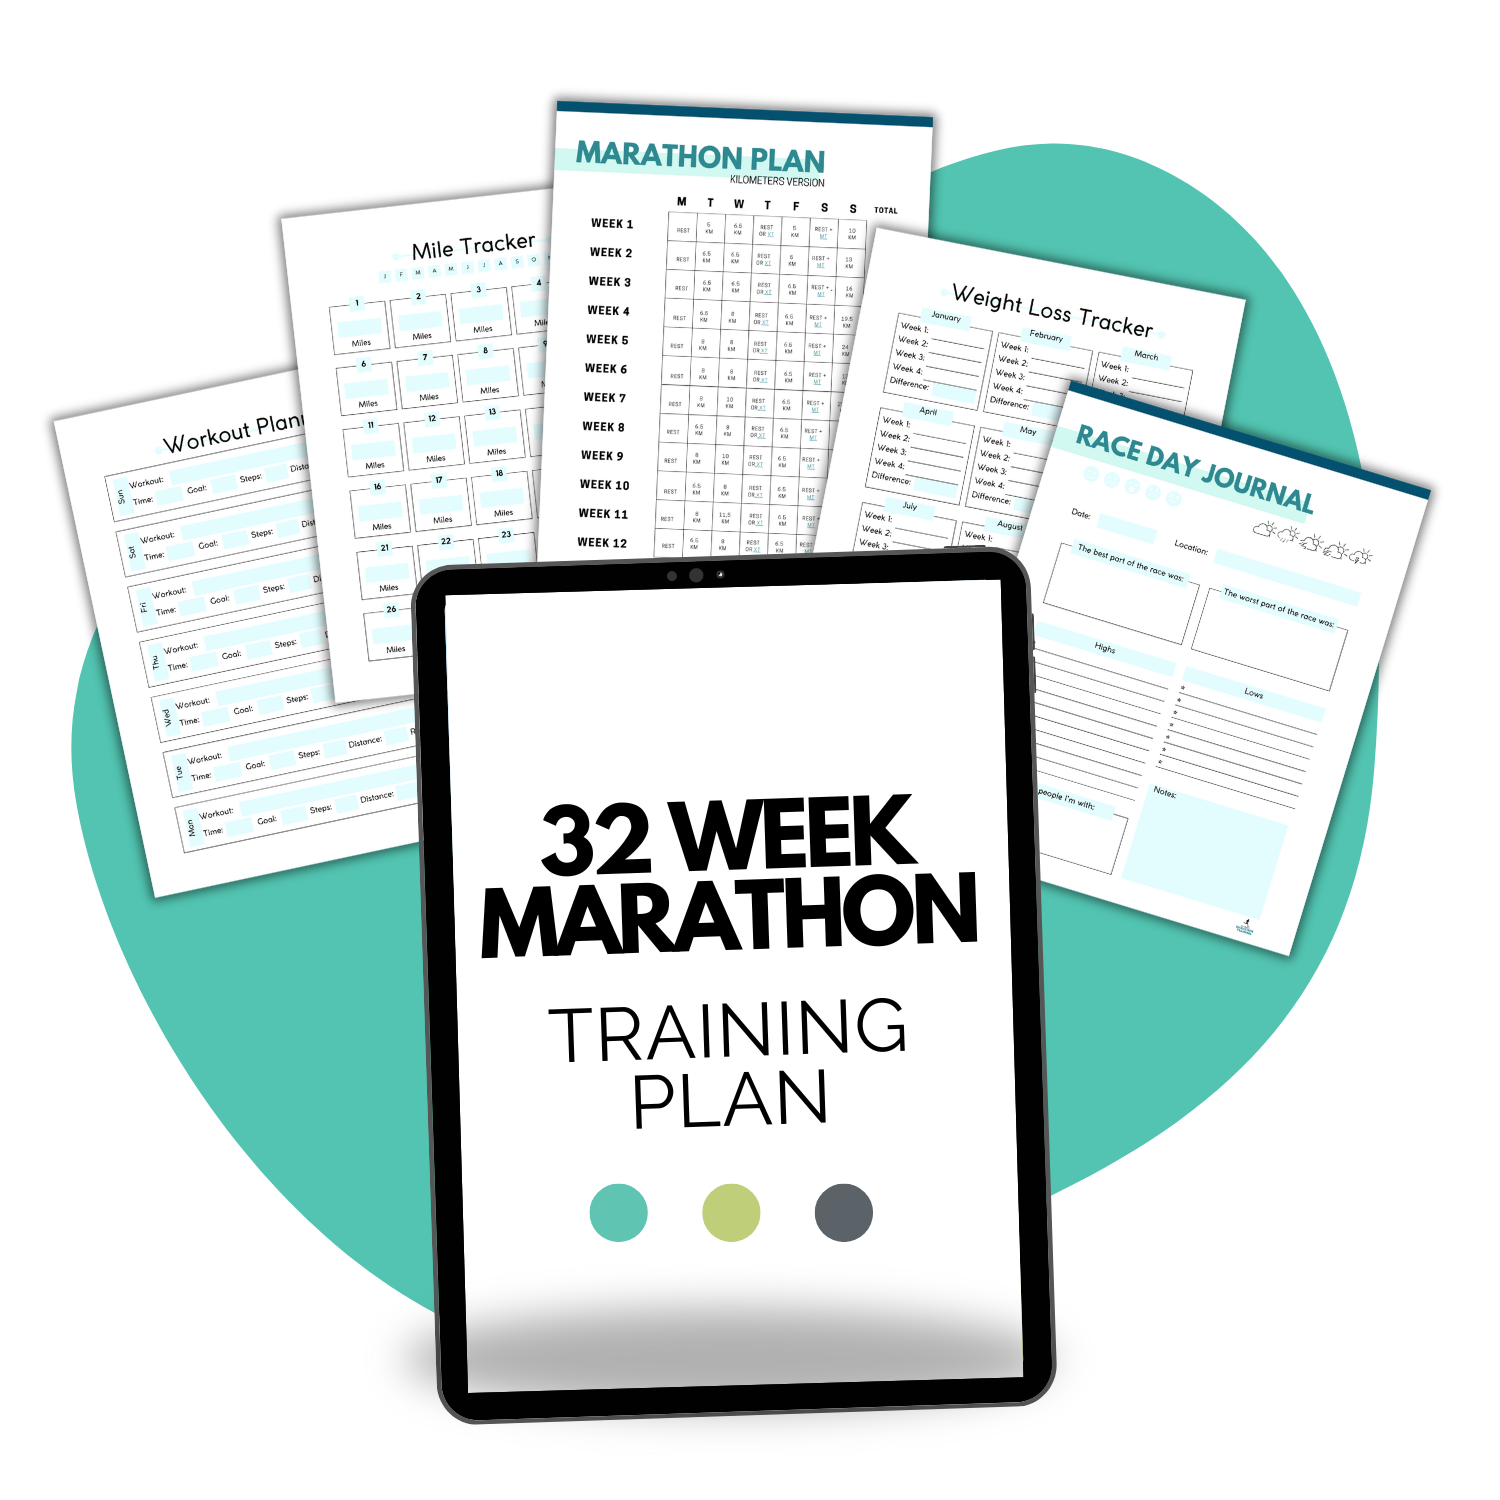 32 Week Marathon Training Schedule Mockup